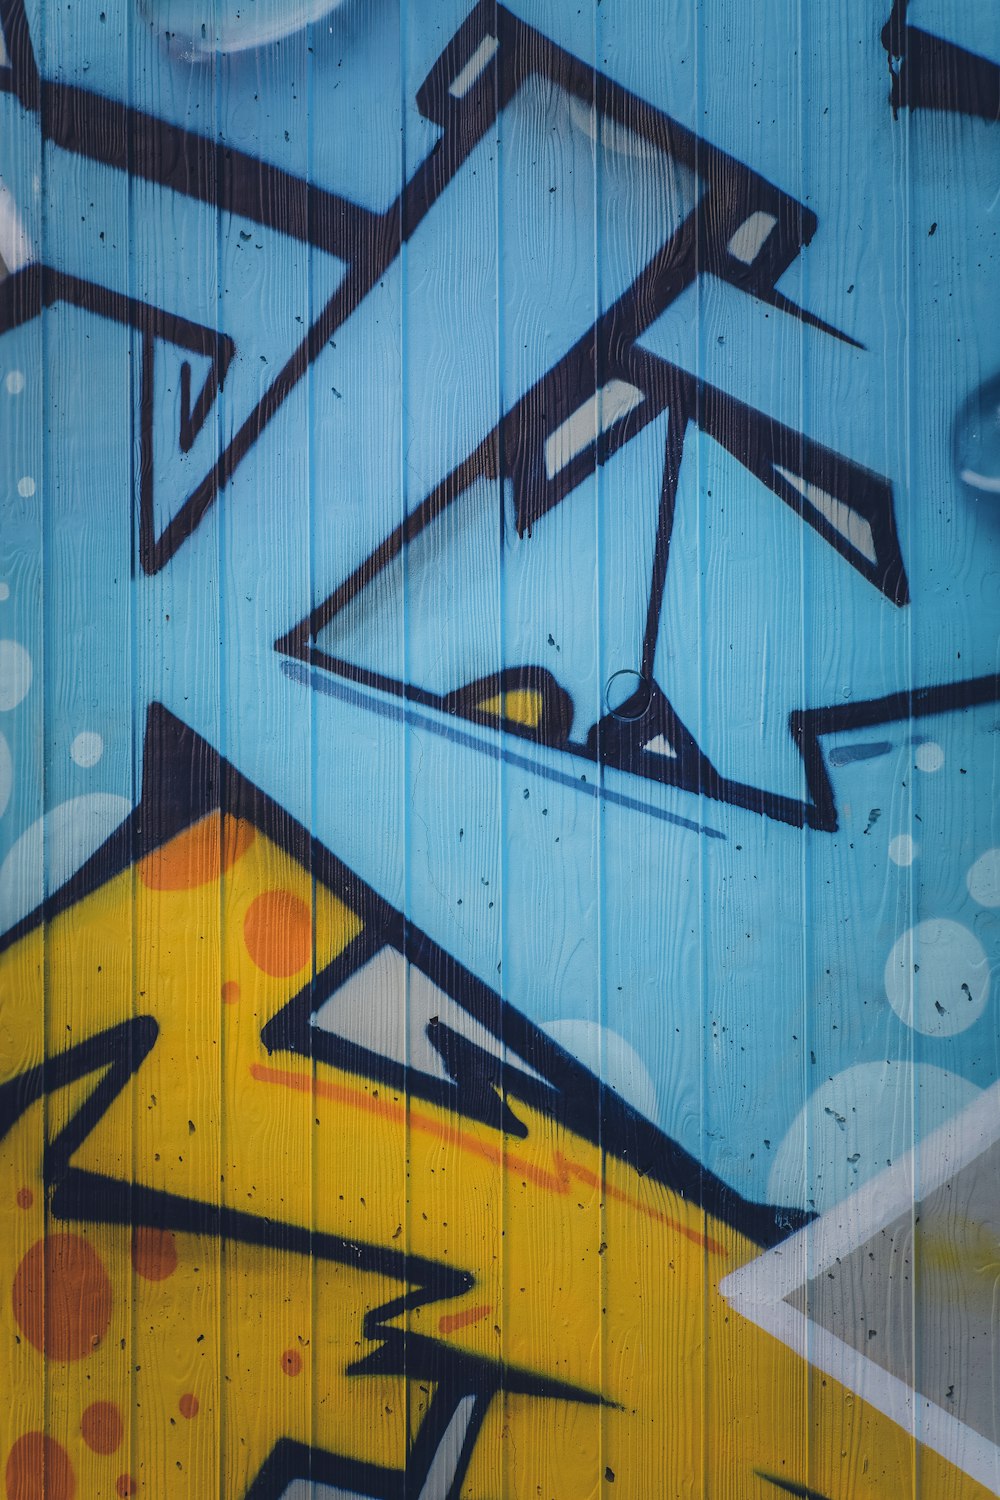 Graffiti Wallpapers: Free HD Download [500+ HQ] | Unsplash